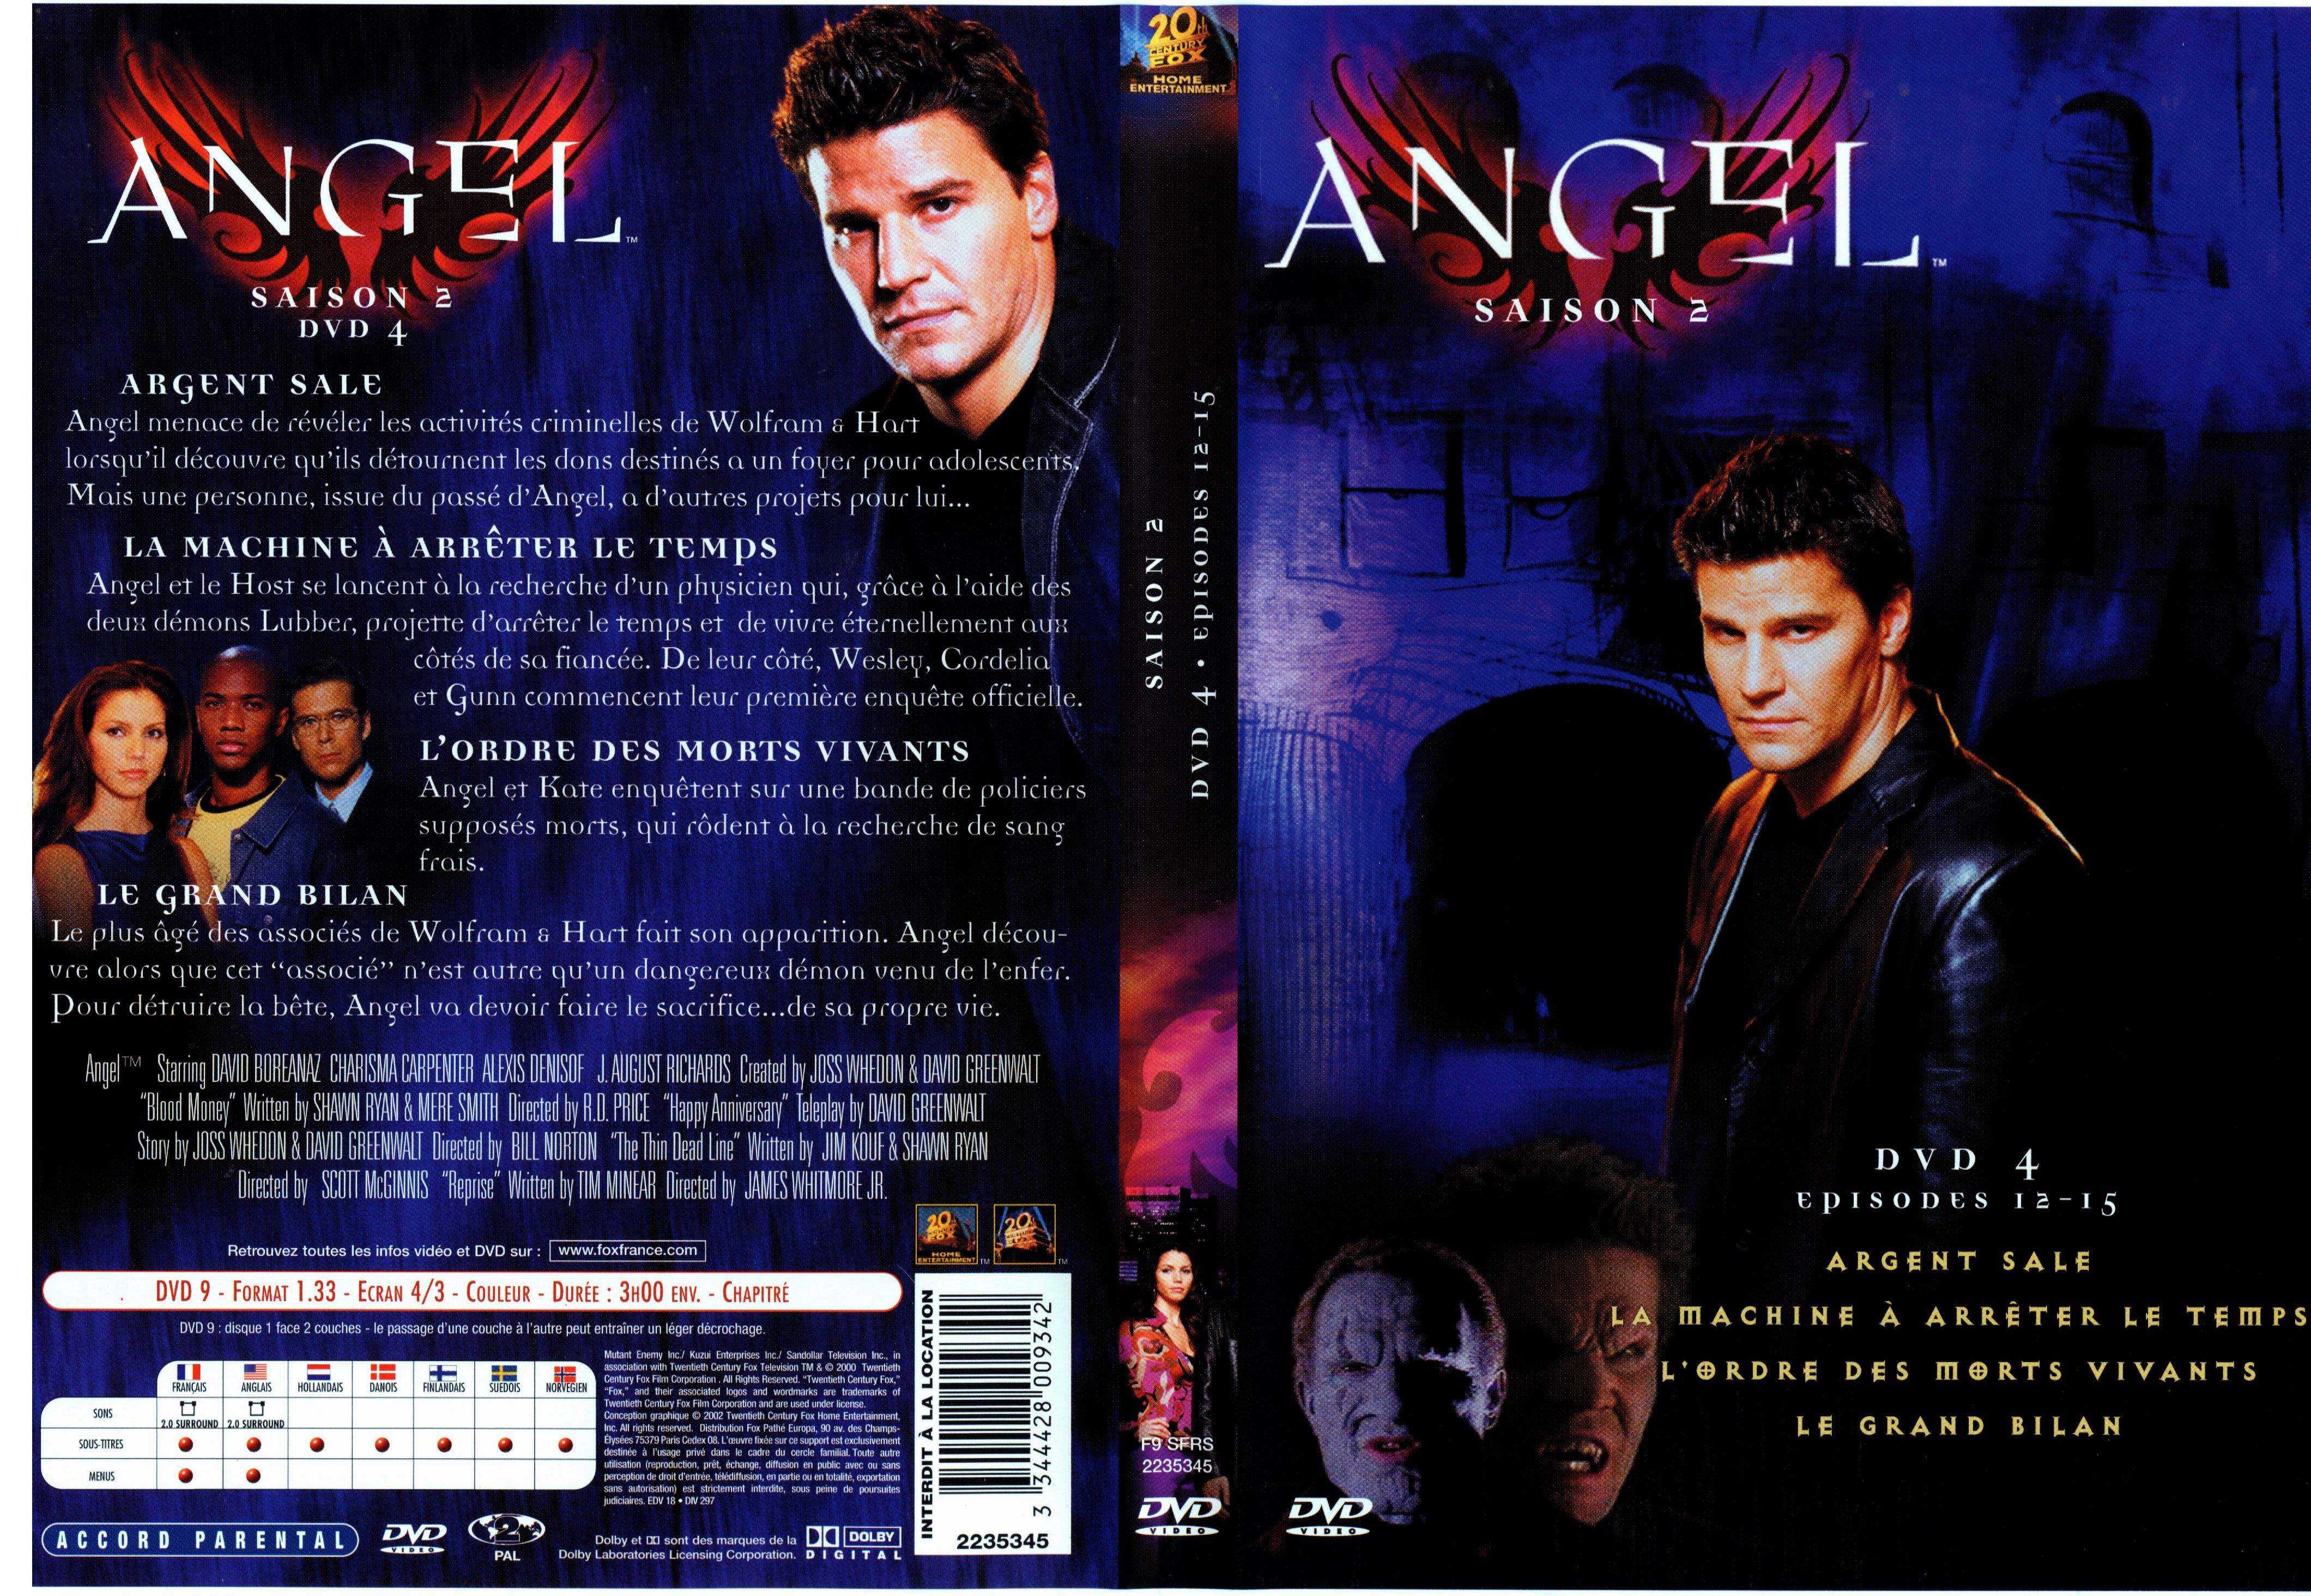 Jaquette DVD Angel Saison 2 dvd 4